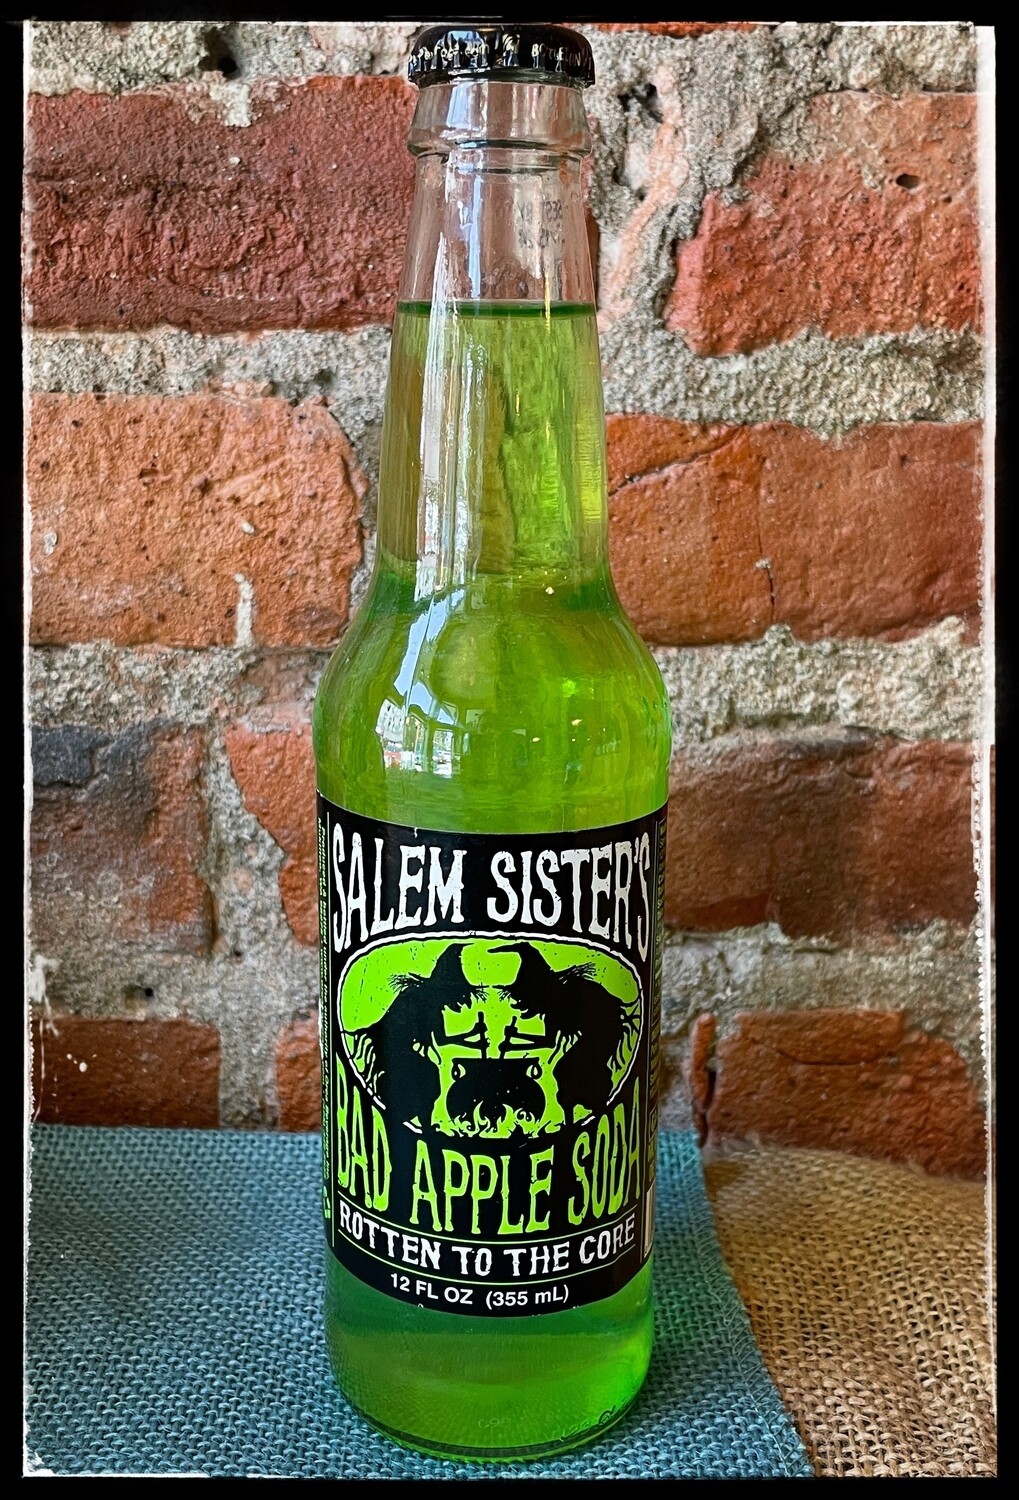 Salem Sister's Bad Apple Soda